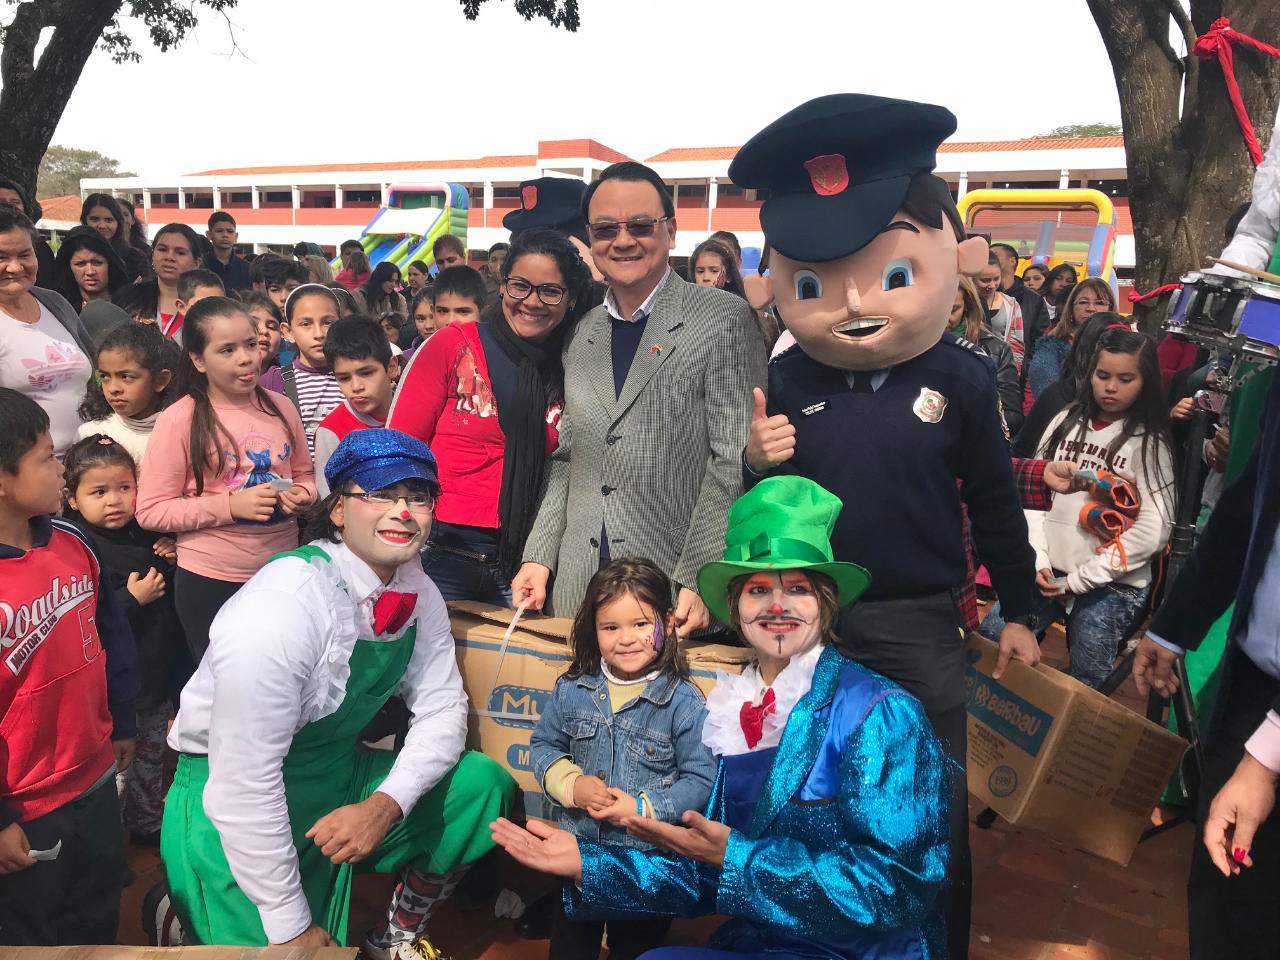 El embajador de la República de China (Taiwan) en el Paraguay, Diego L. Chou, participó de los festejos organizados por la Asociación Rosa Poty en la Academia Nacional de Policía del país sudamericano con motivo del Día del Niño, el 4 de agosto, 2018.